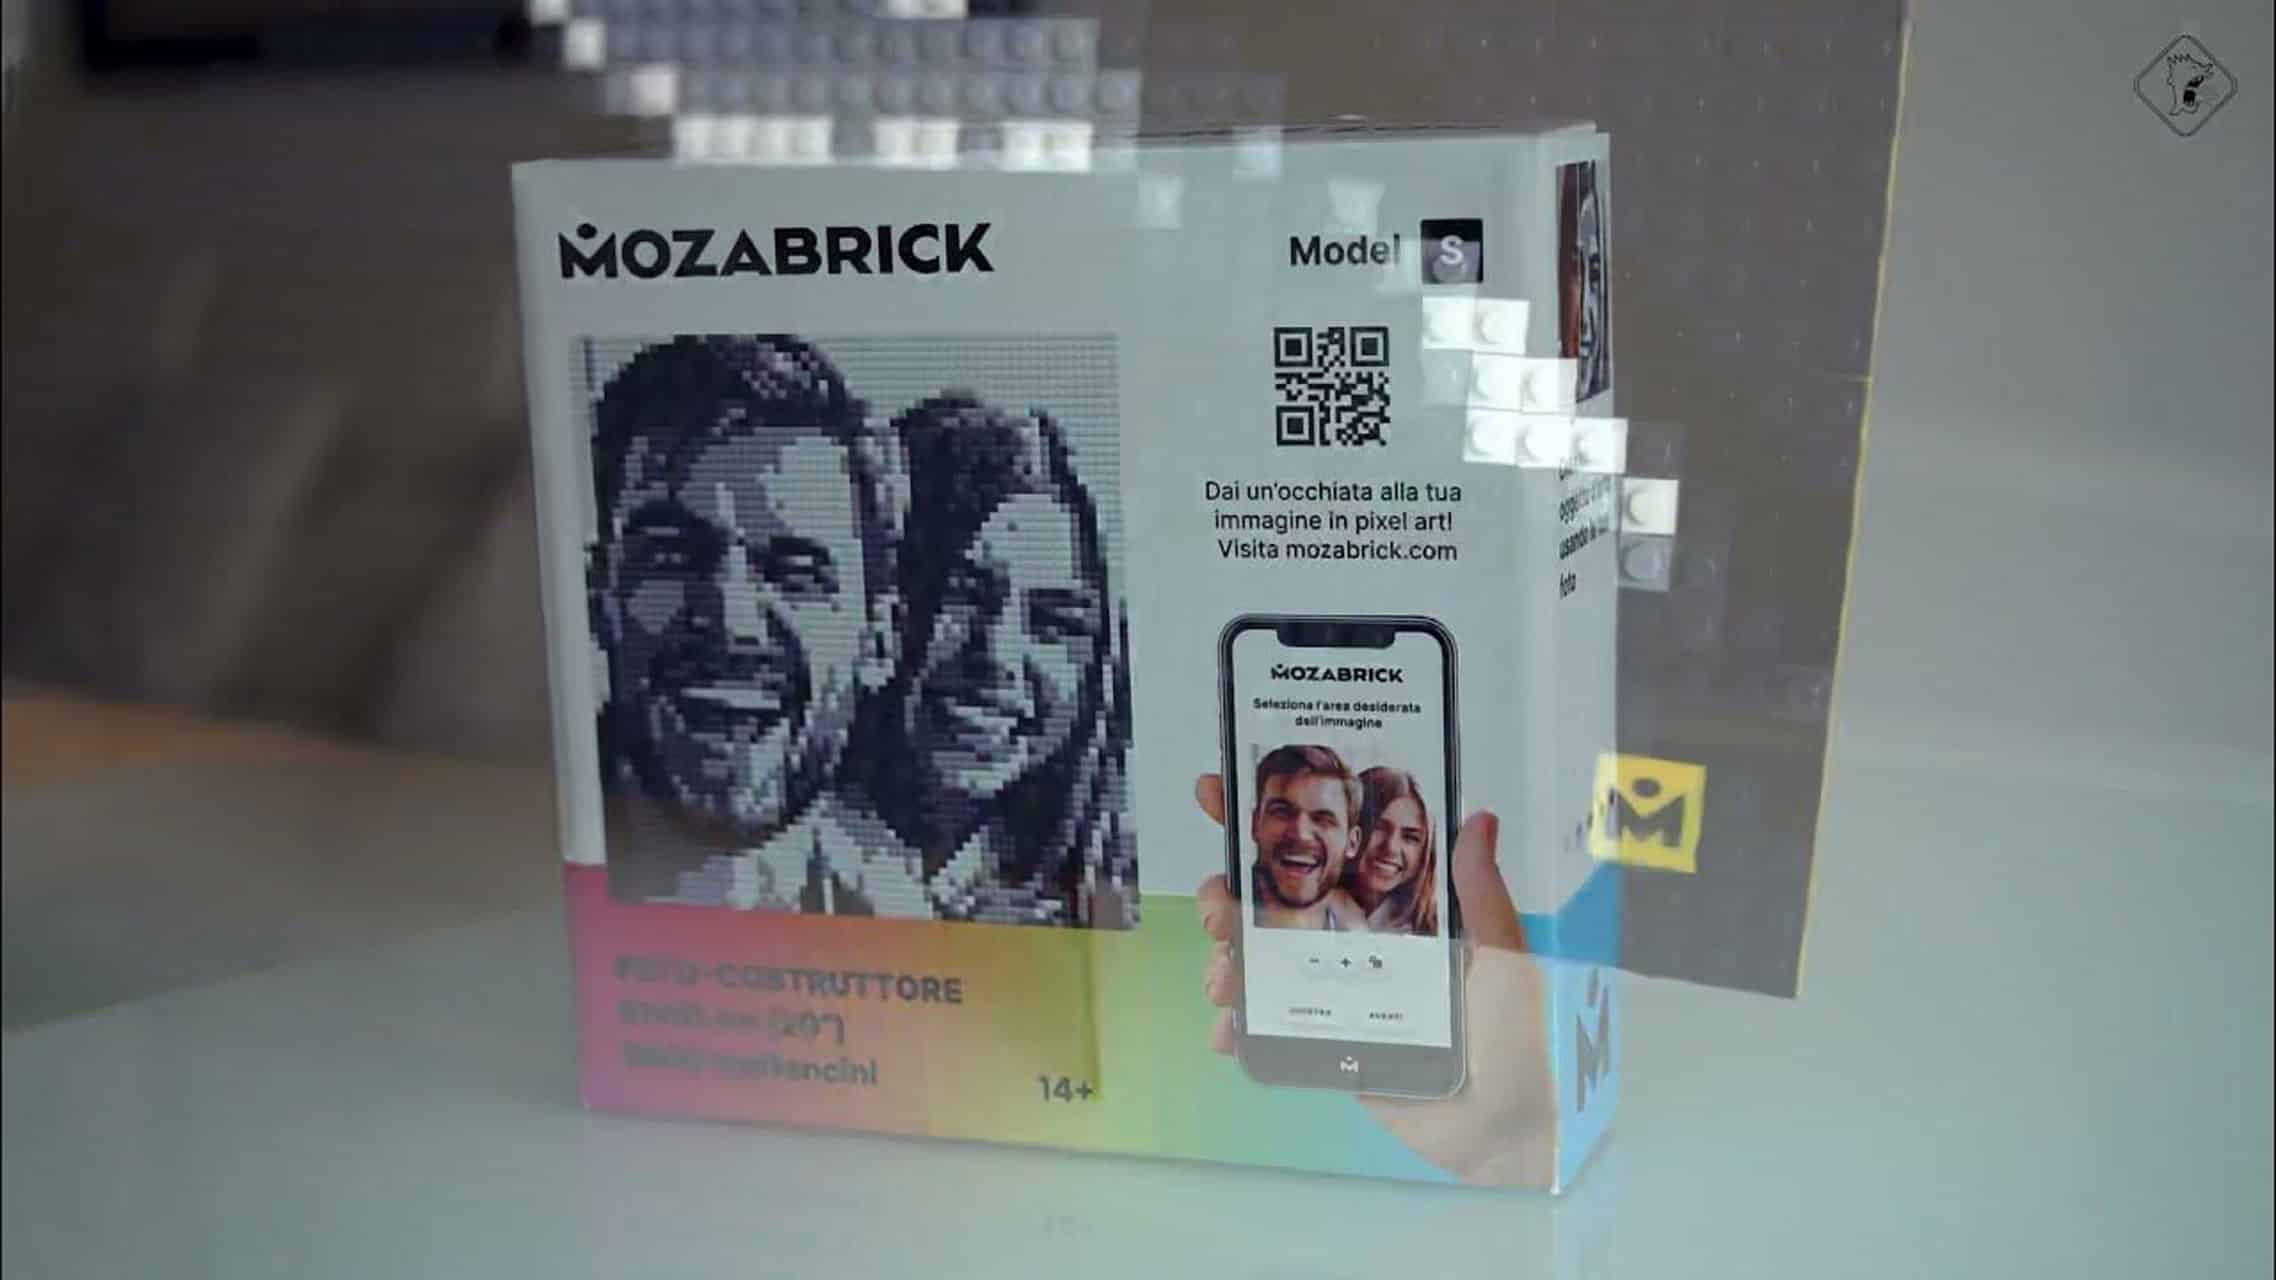 Un'esperienza creativa con un kit Mozabrick, presentando un'immagine mosaico di una coppia sorridente, con codici QR e un'app interfaccia mostrata sulla